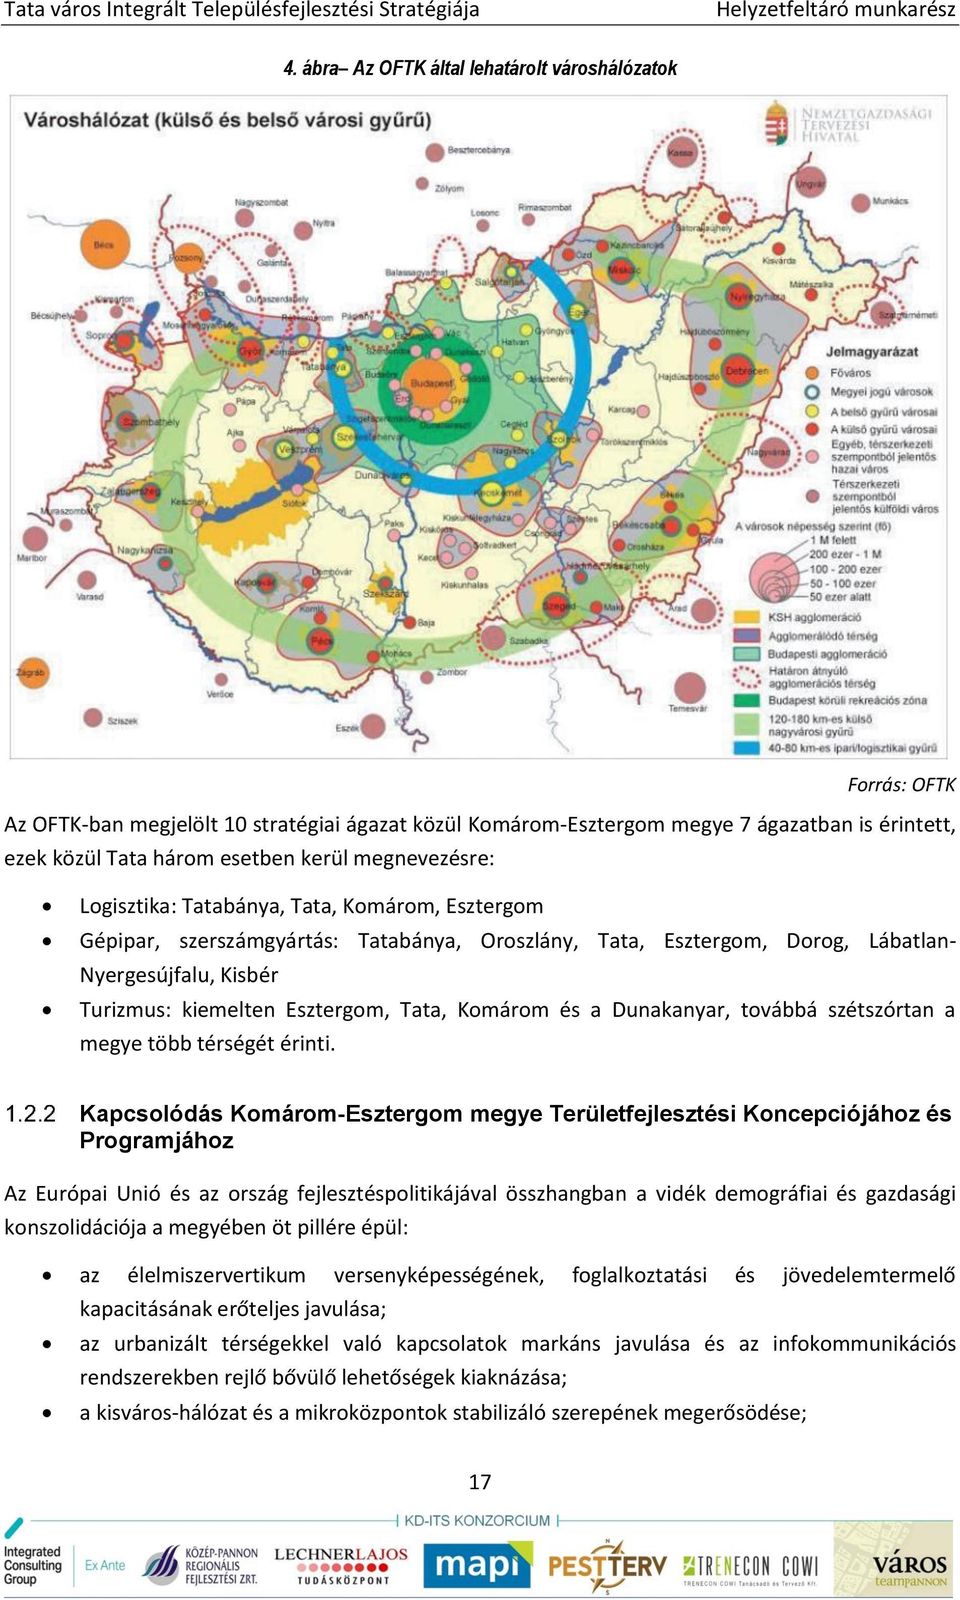 Tata, Komárom és a Dunakanyar, továbbá szétszórtan a megye több térségét érinti.